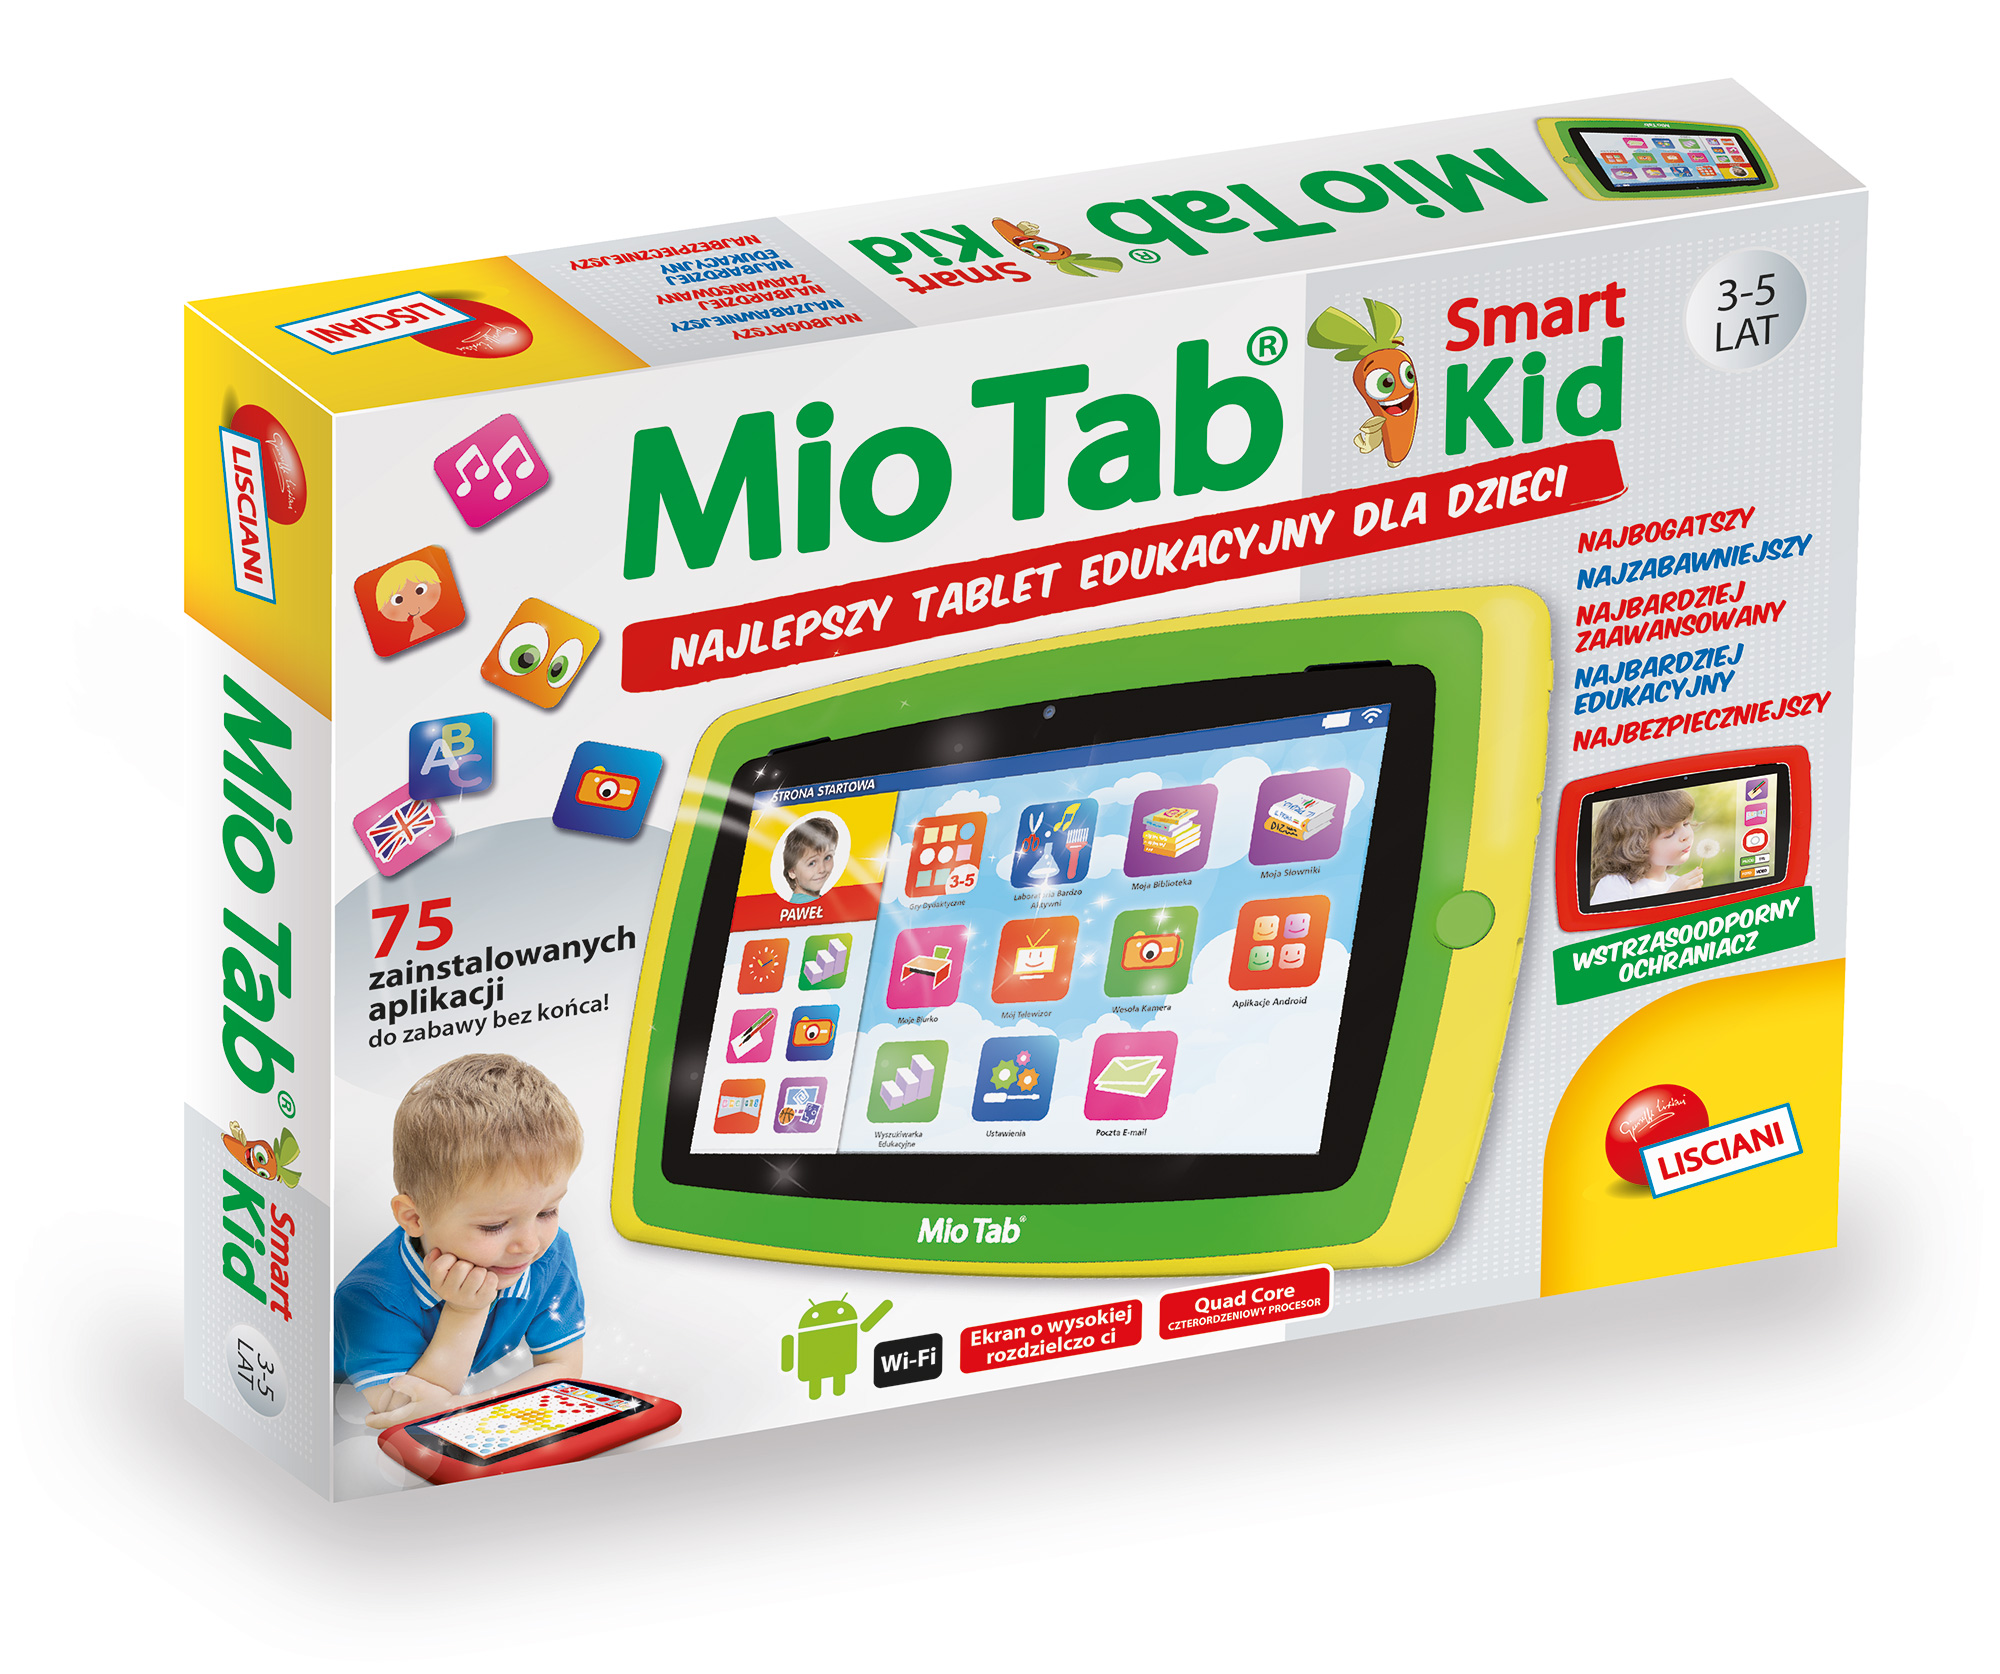 Tablet Edukacyjny Dla 5 Latka Tablet edukacyjny dla najmłodszych Mio Tab Smart Kid 4.0 - RynekZabawek.pl